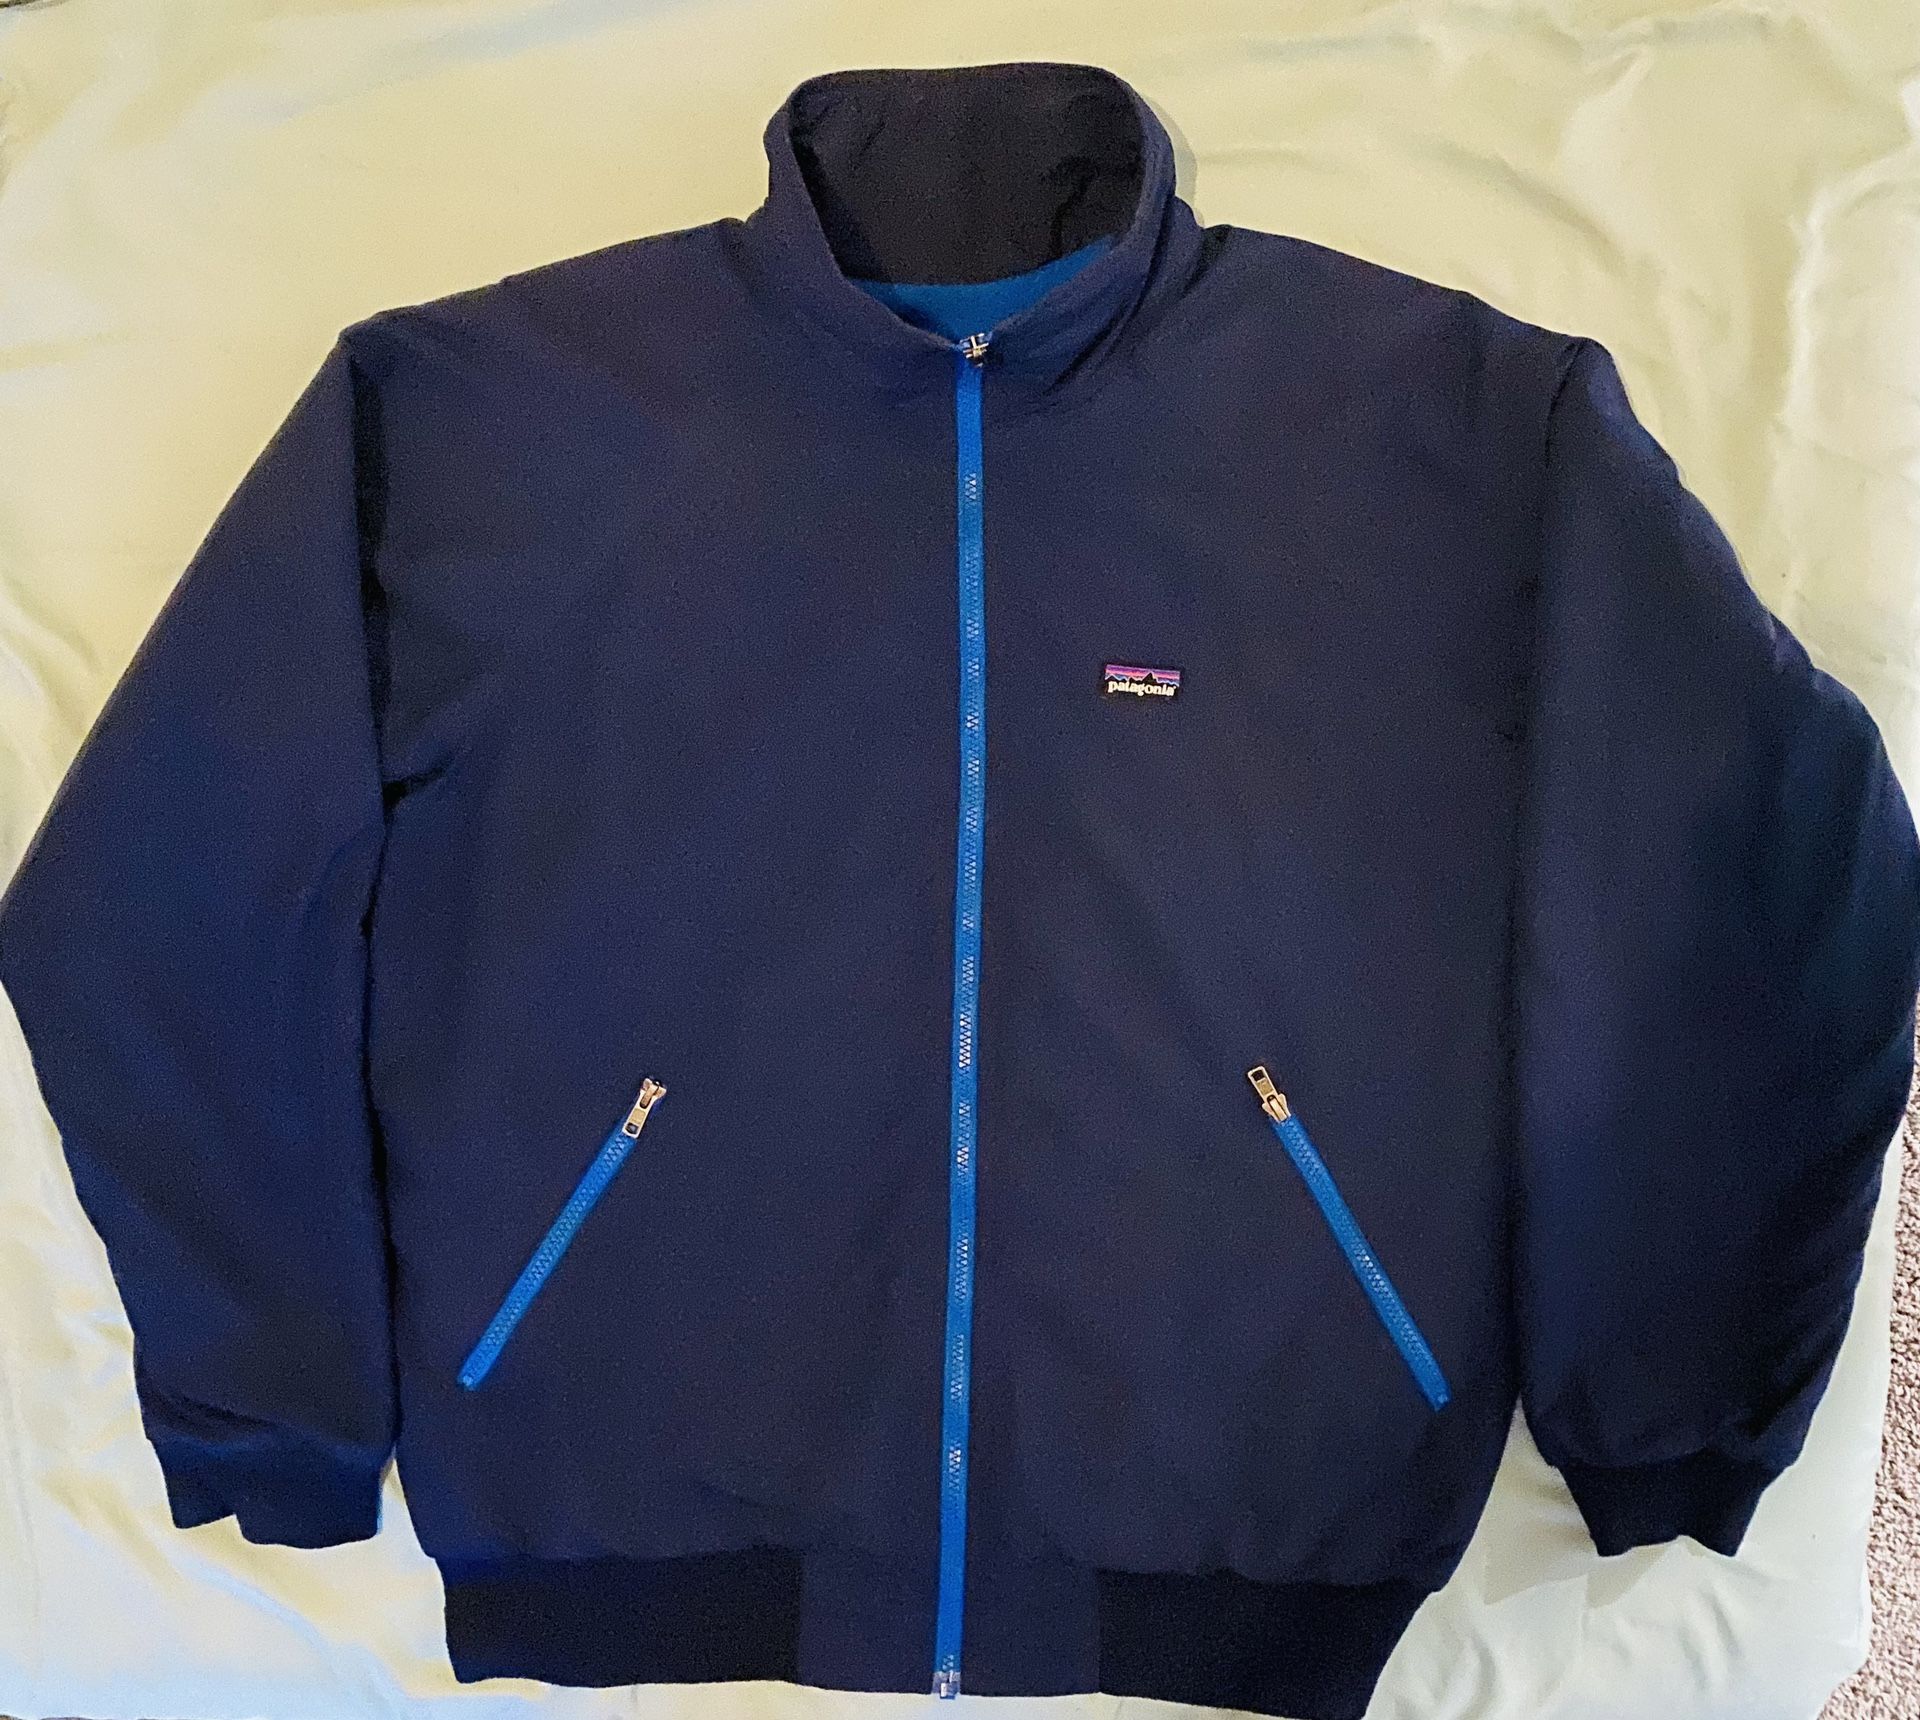 Large Patagonia jacket